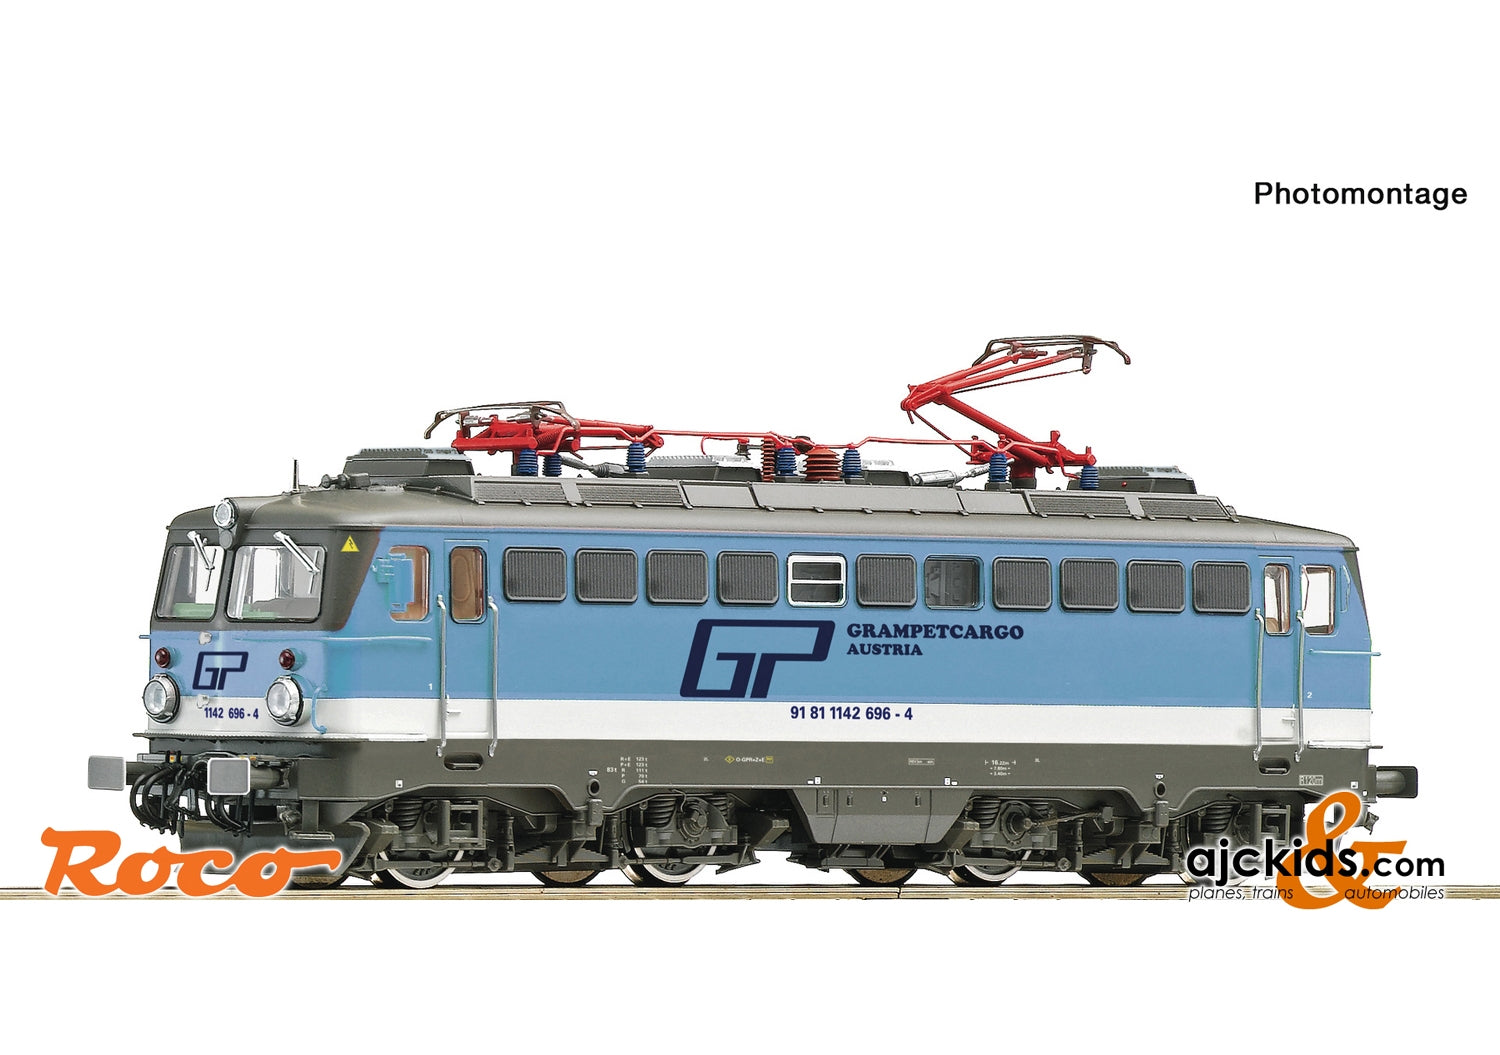 Roco 79479 - Electric locomotive 1142 696-4